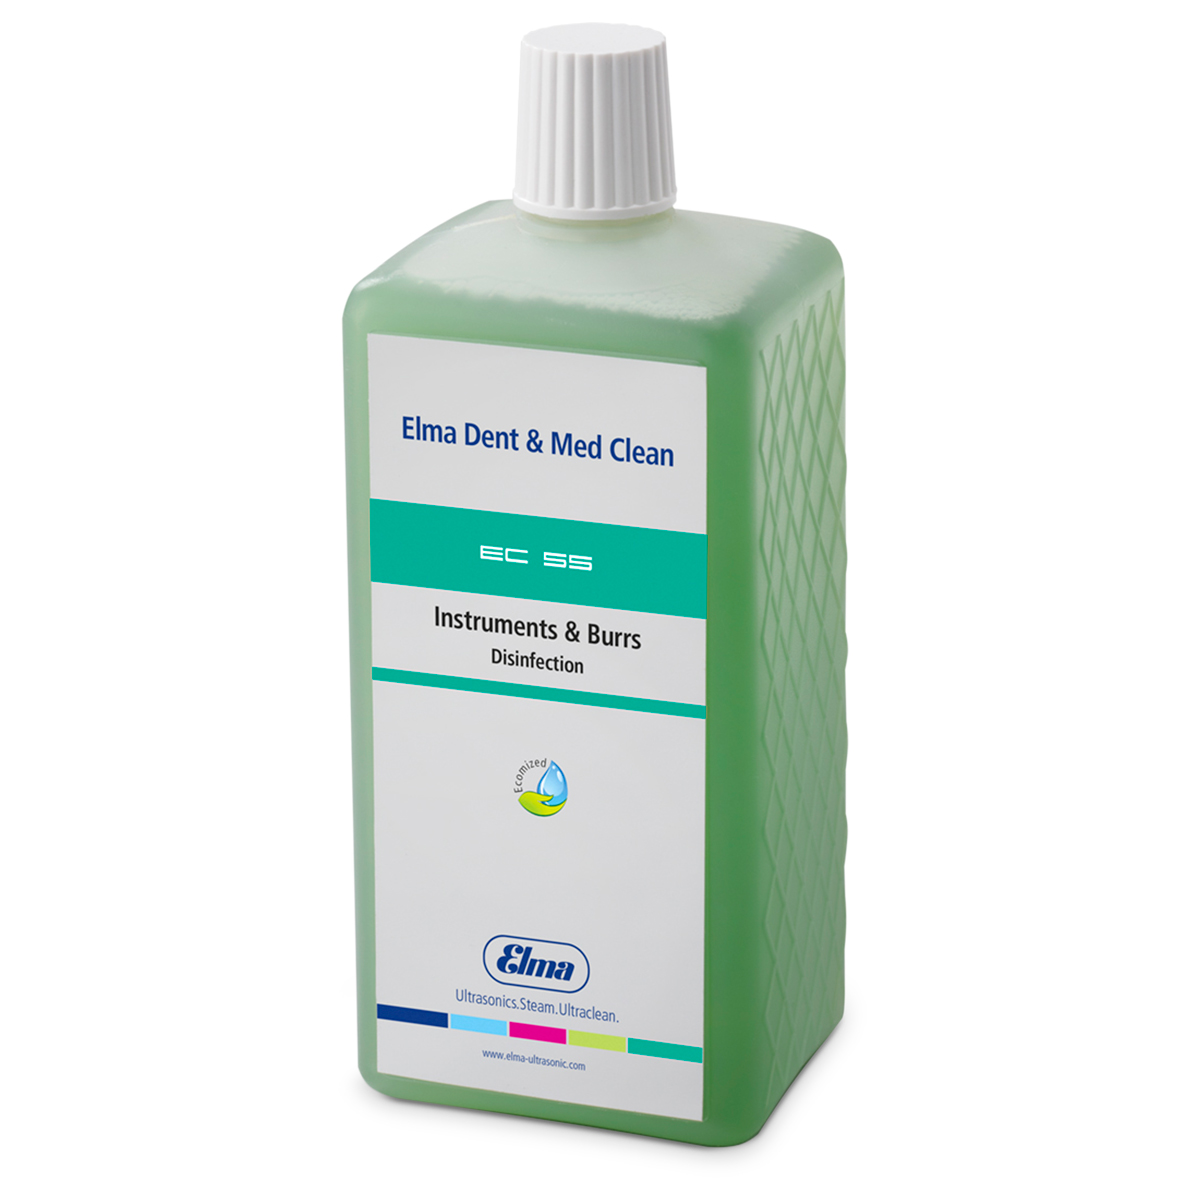 Elma Clean 55, Konzentrat zur Desinfektion im Tauchbad mit und ohne Ultraschall, 1 Liter